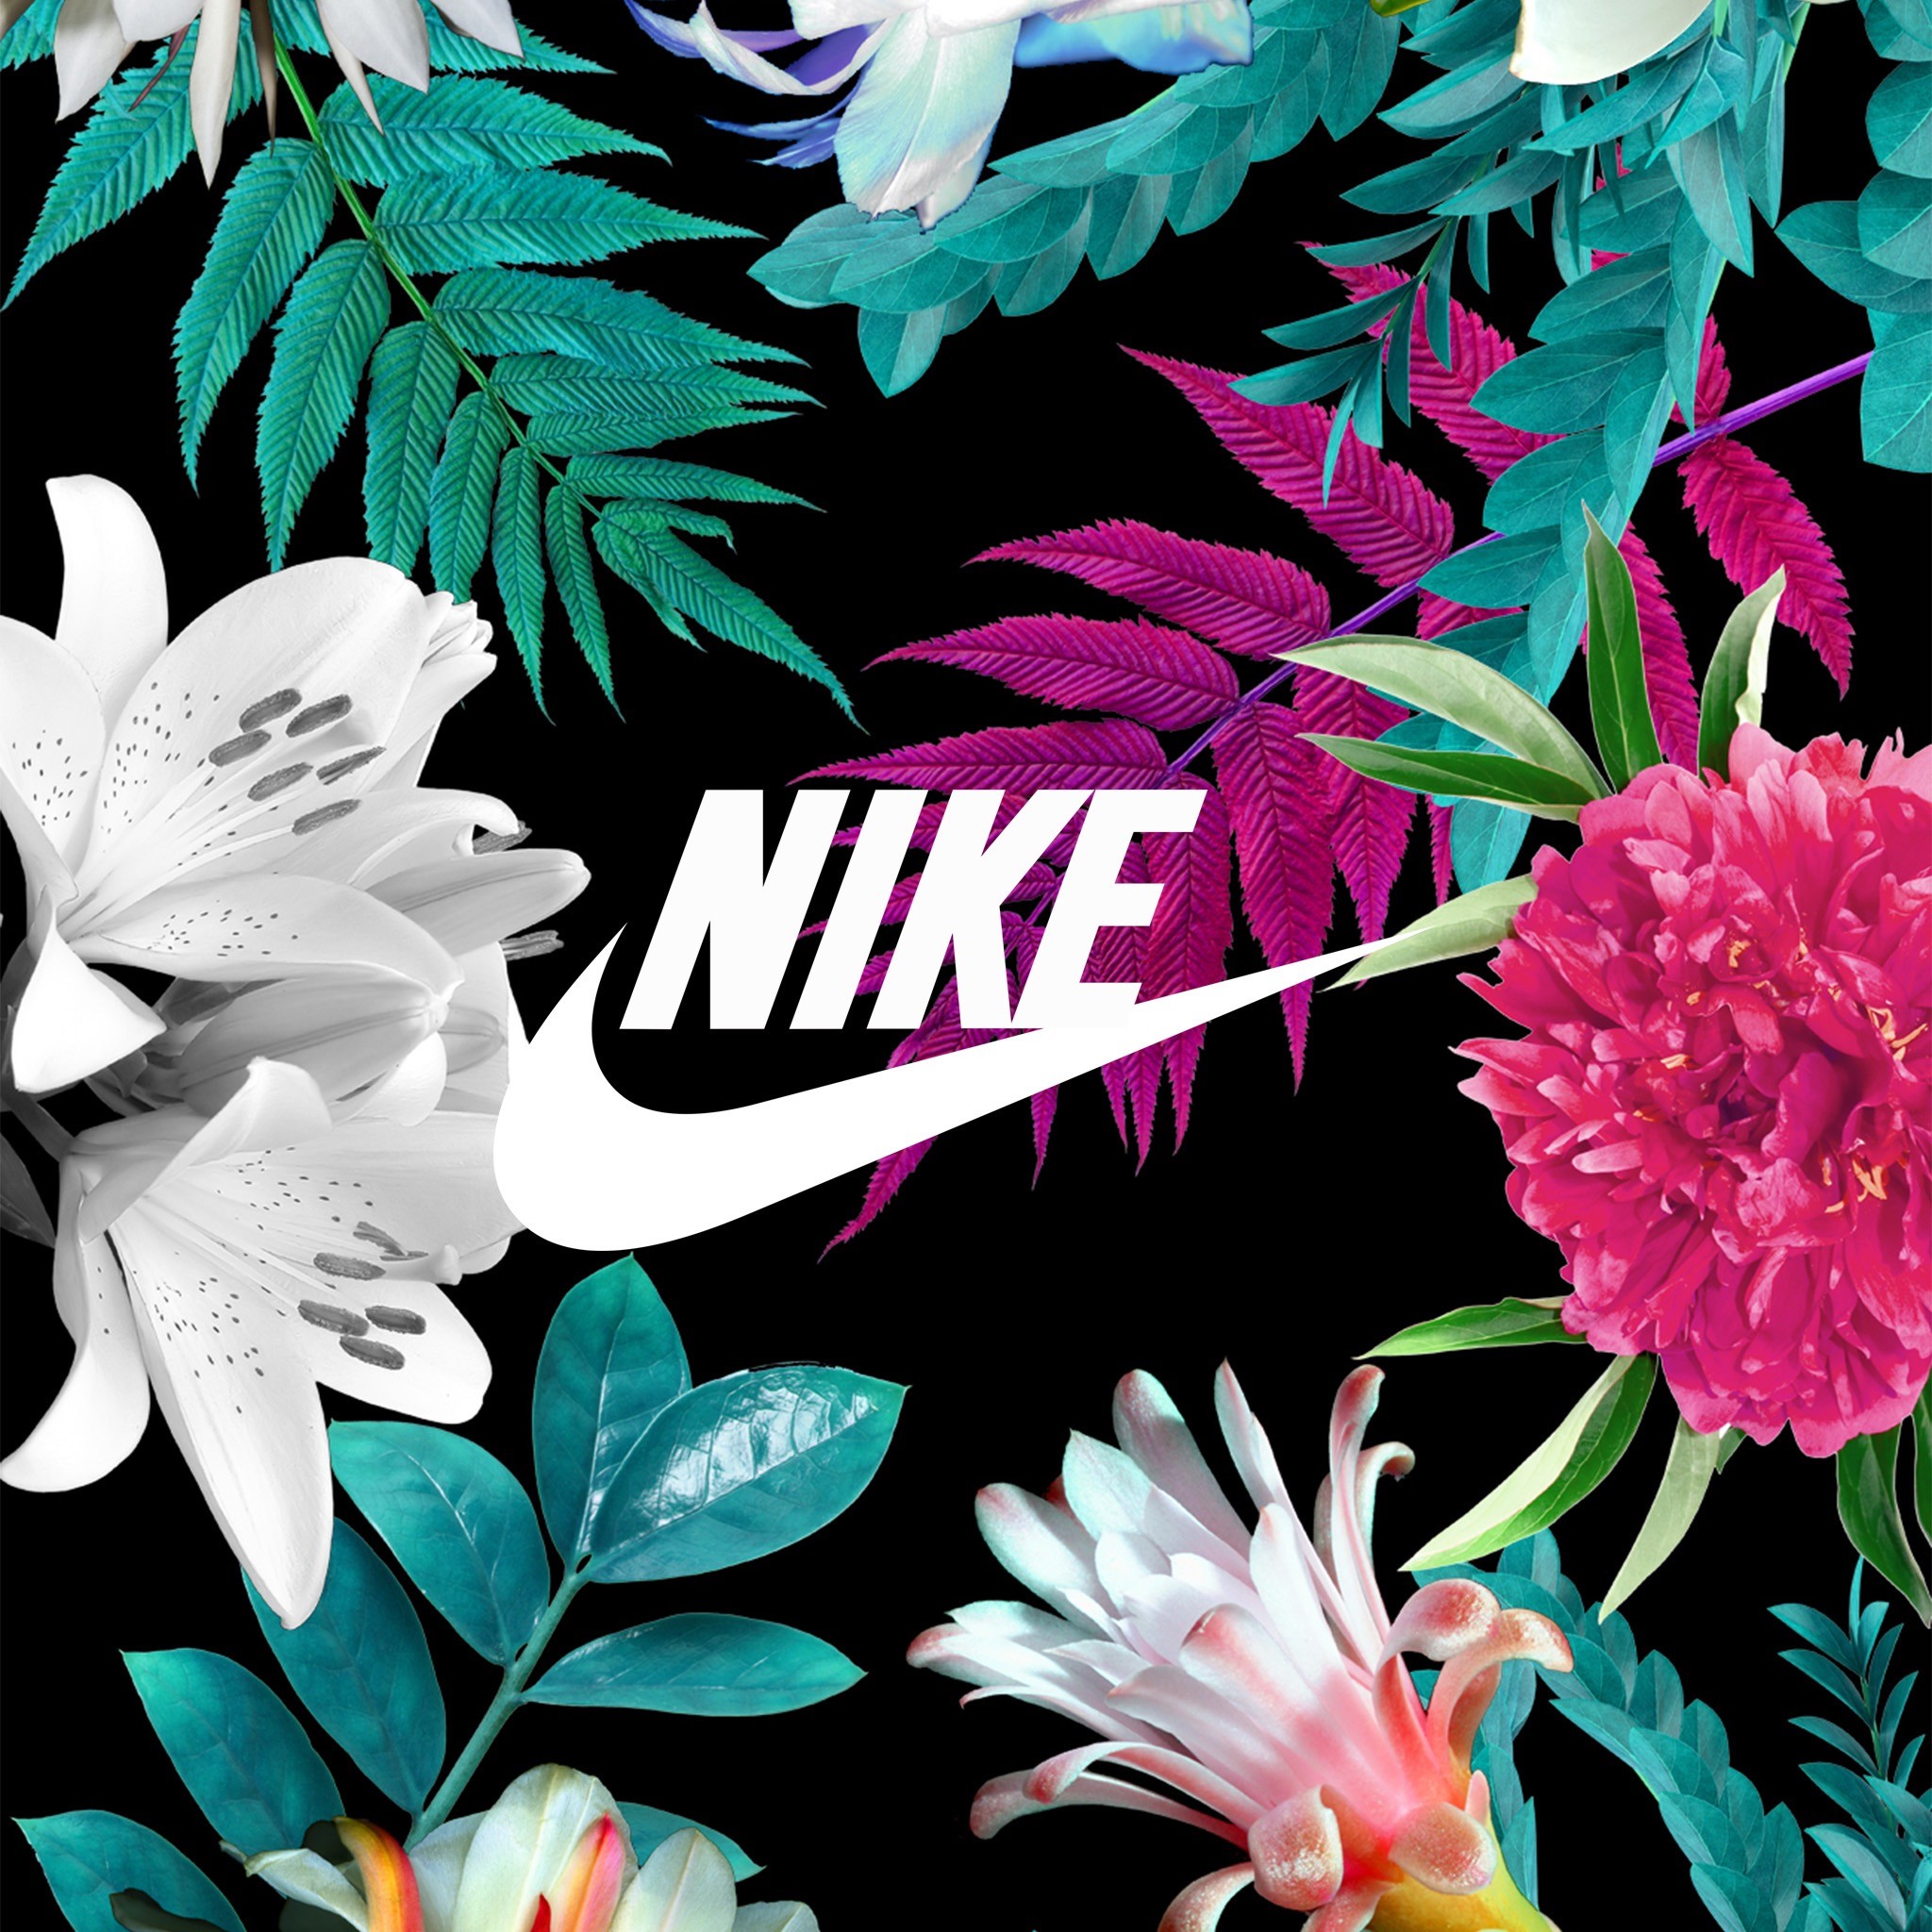 2048x2048 Nike with them flowers ð¶